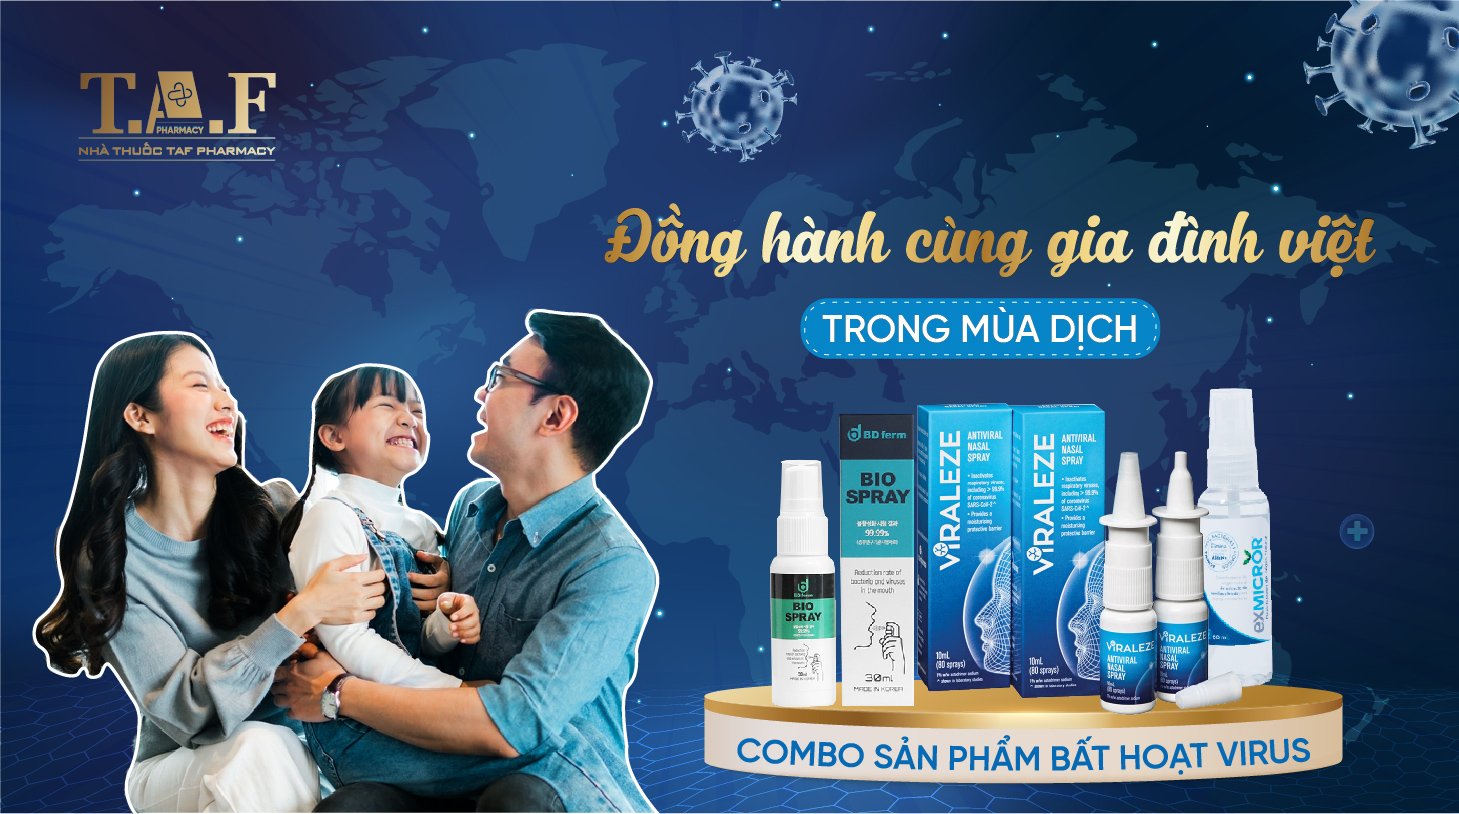 Combo sản phẩm bất hoạt virus - Đồng hành cùng gia đình Việt trong mùa dịch